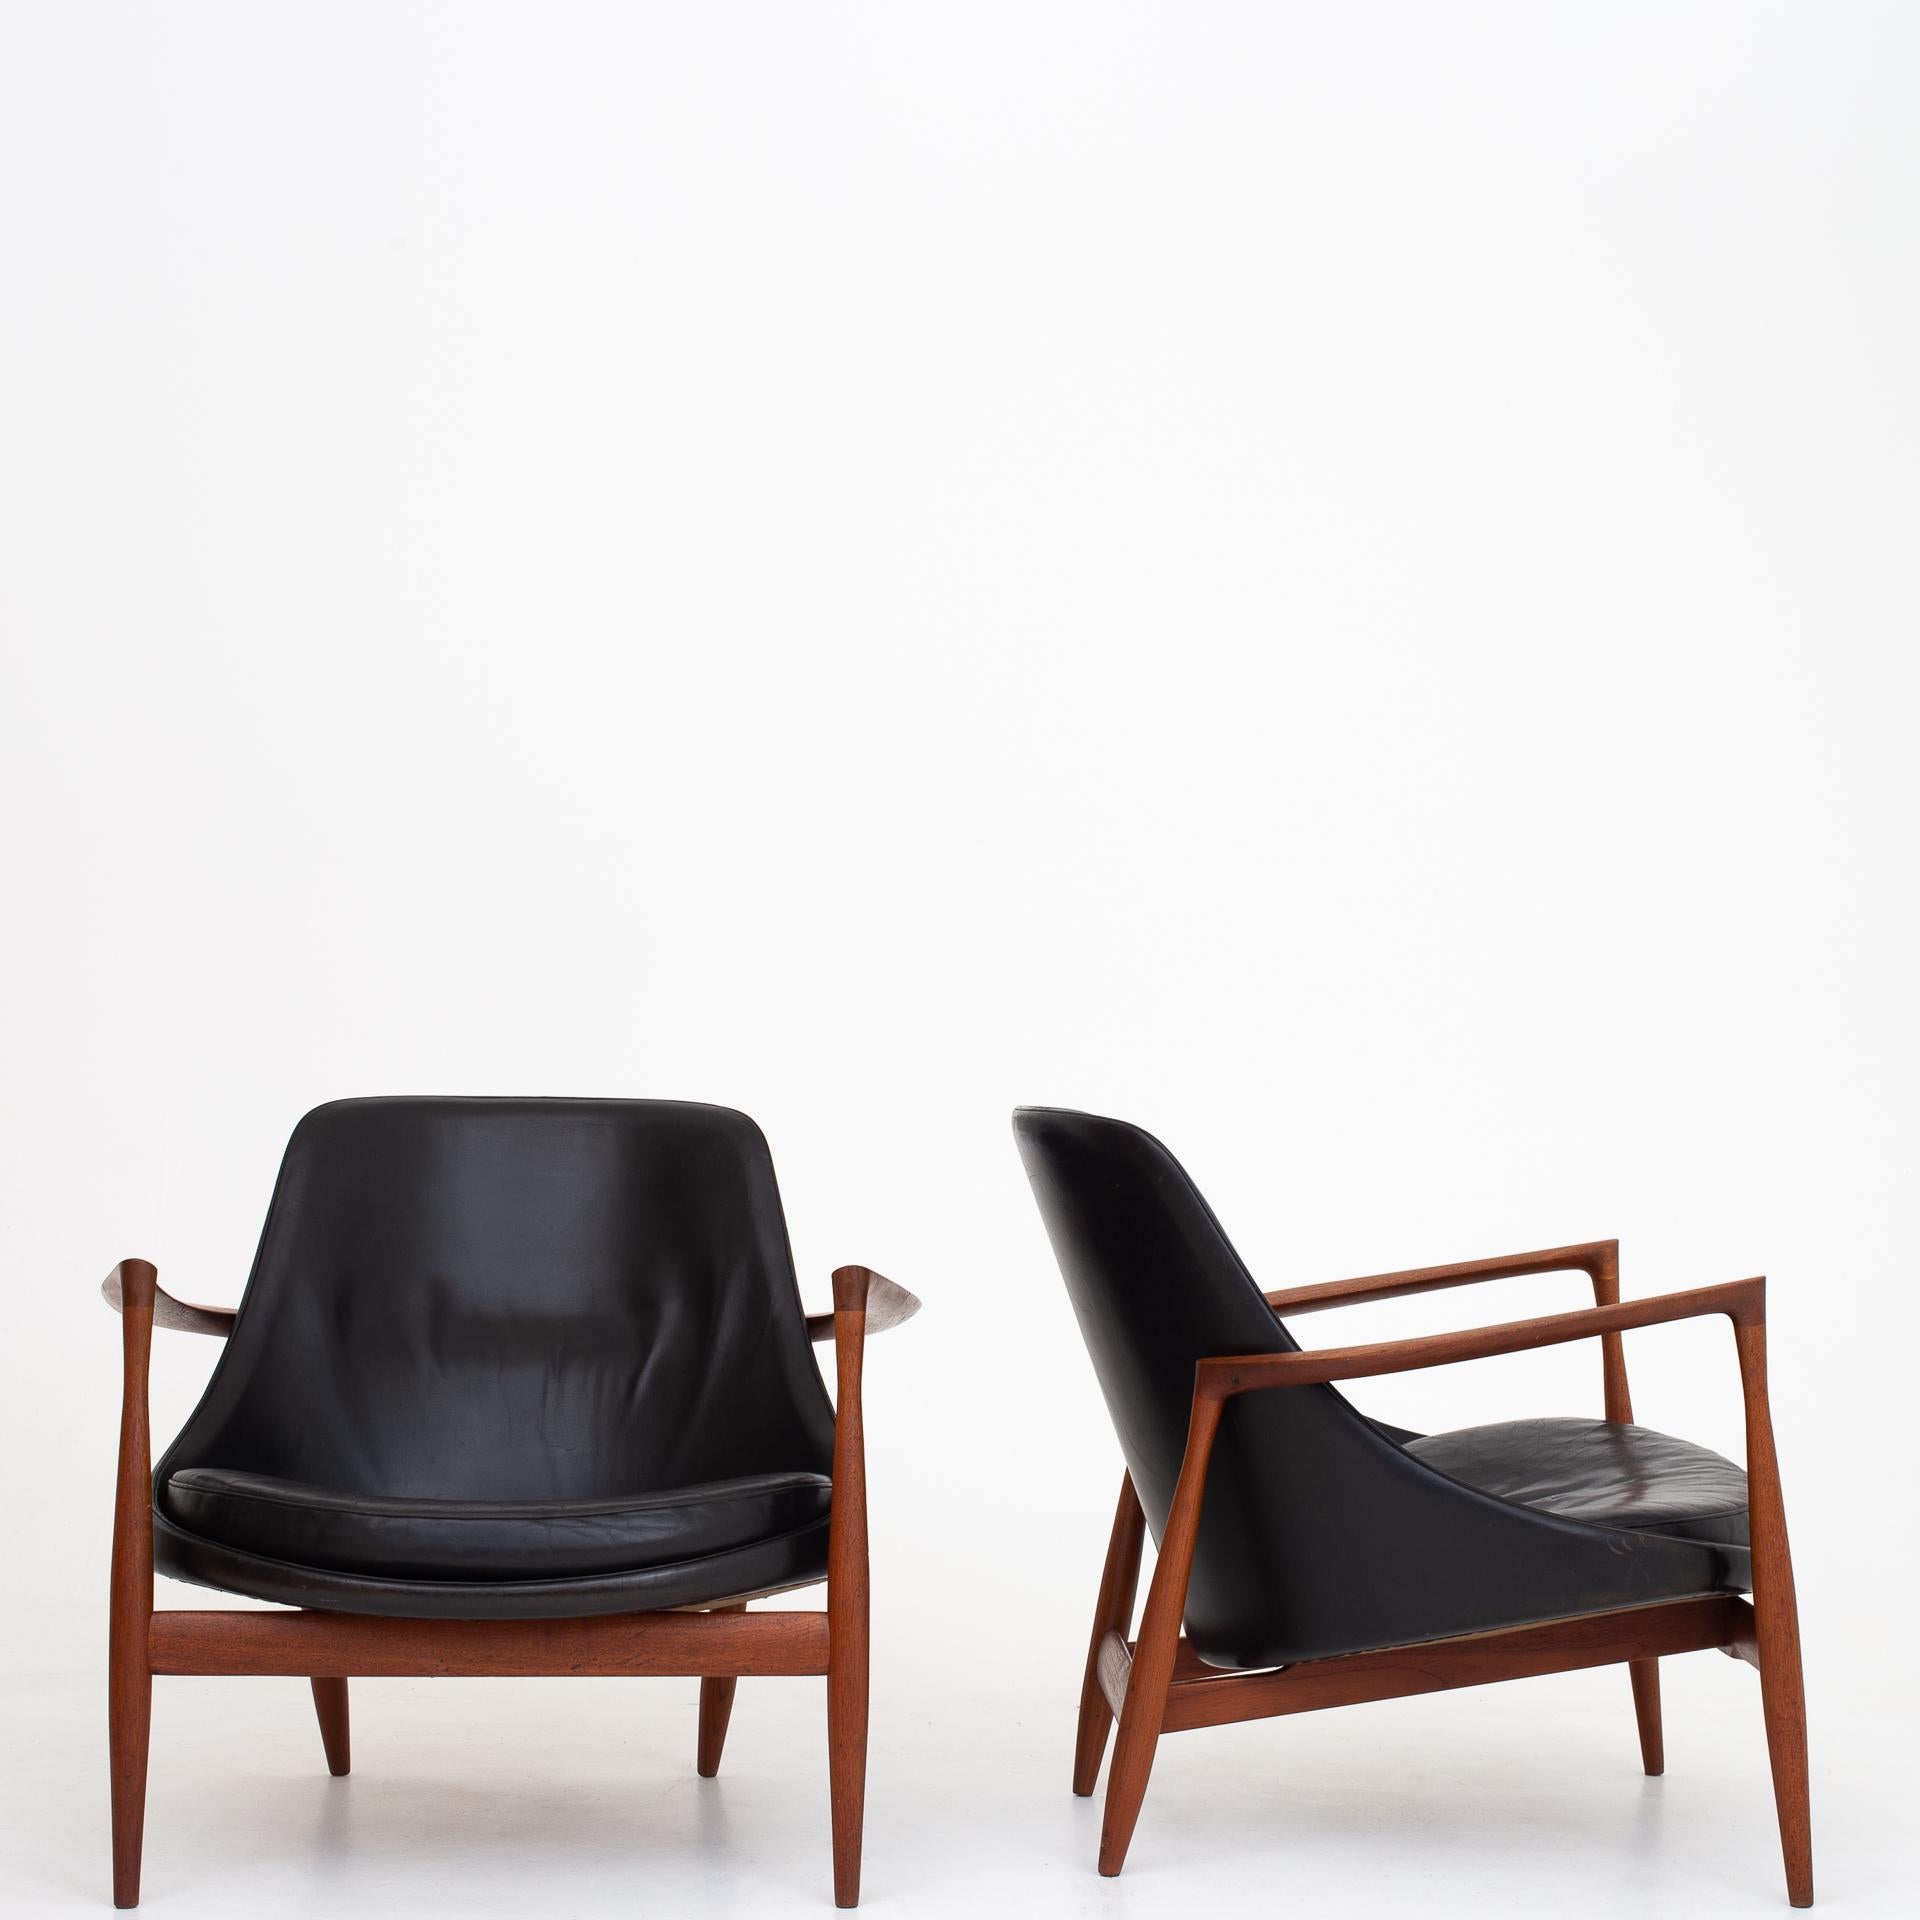 Pair of Elizabeth Chairs by Ib Kofod Larsen 1